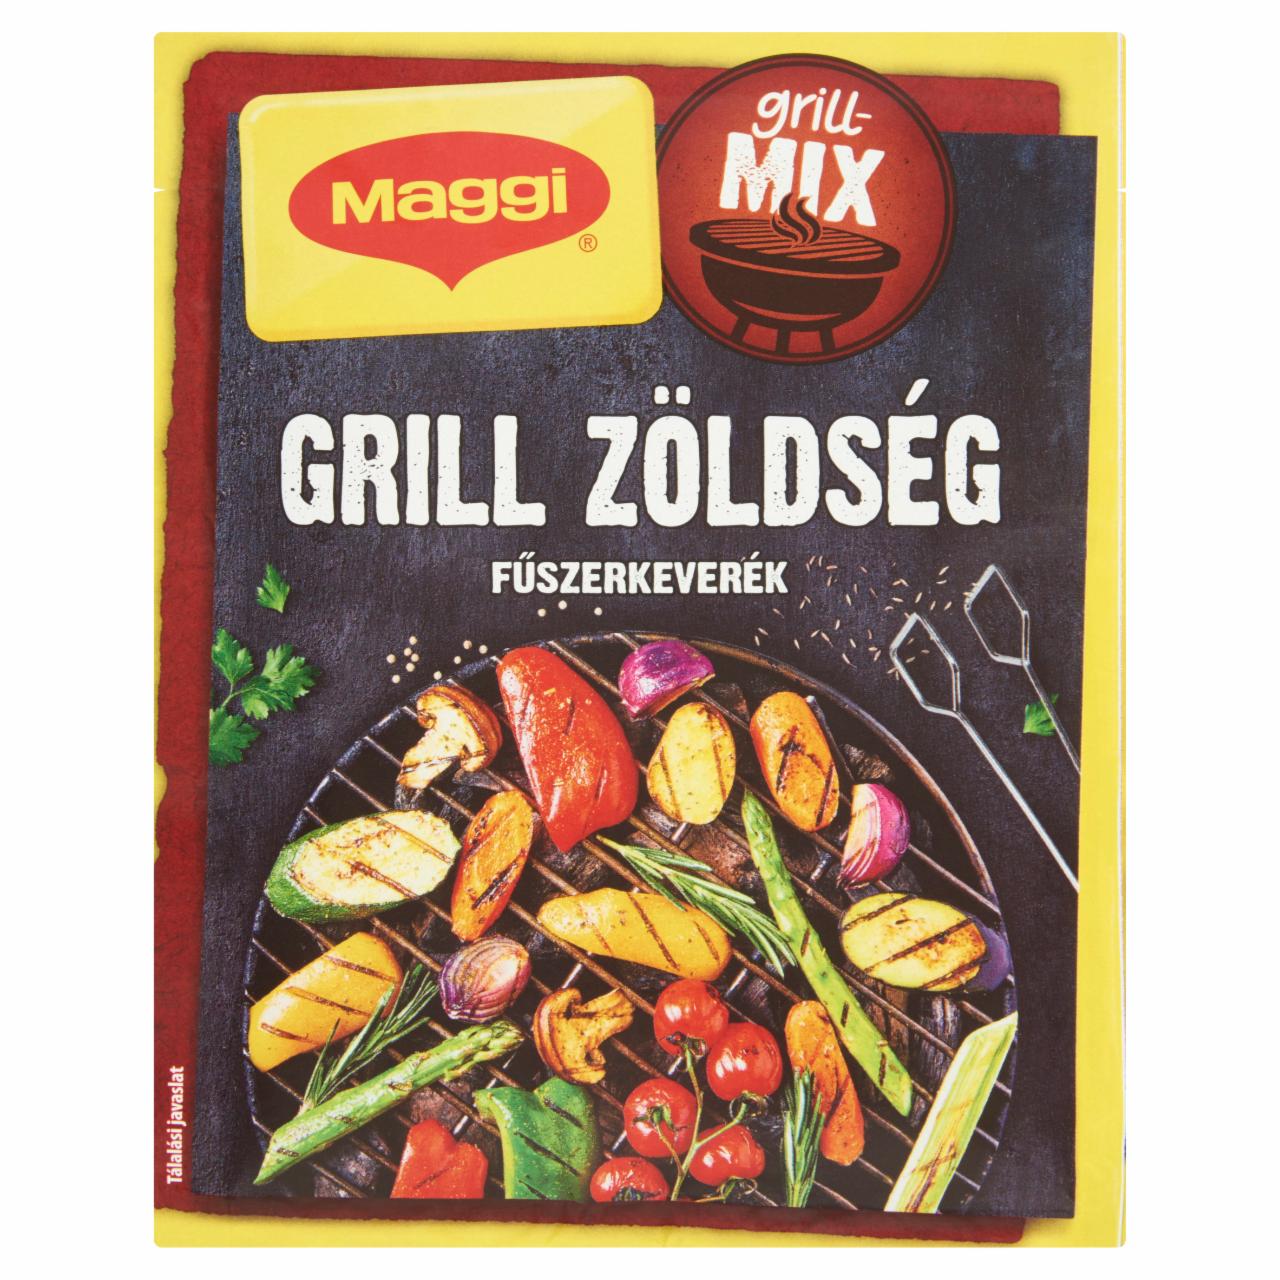 Képek - Maggi Grillmix Grill zöldség fűszerkeverék 30 g